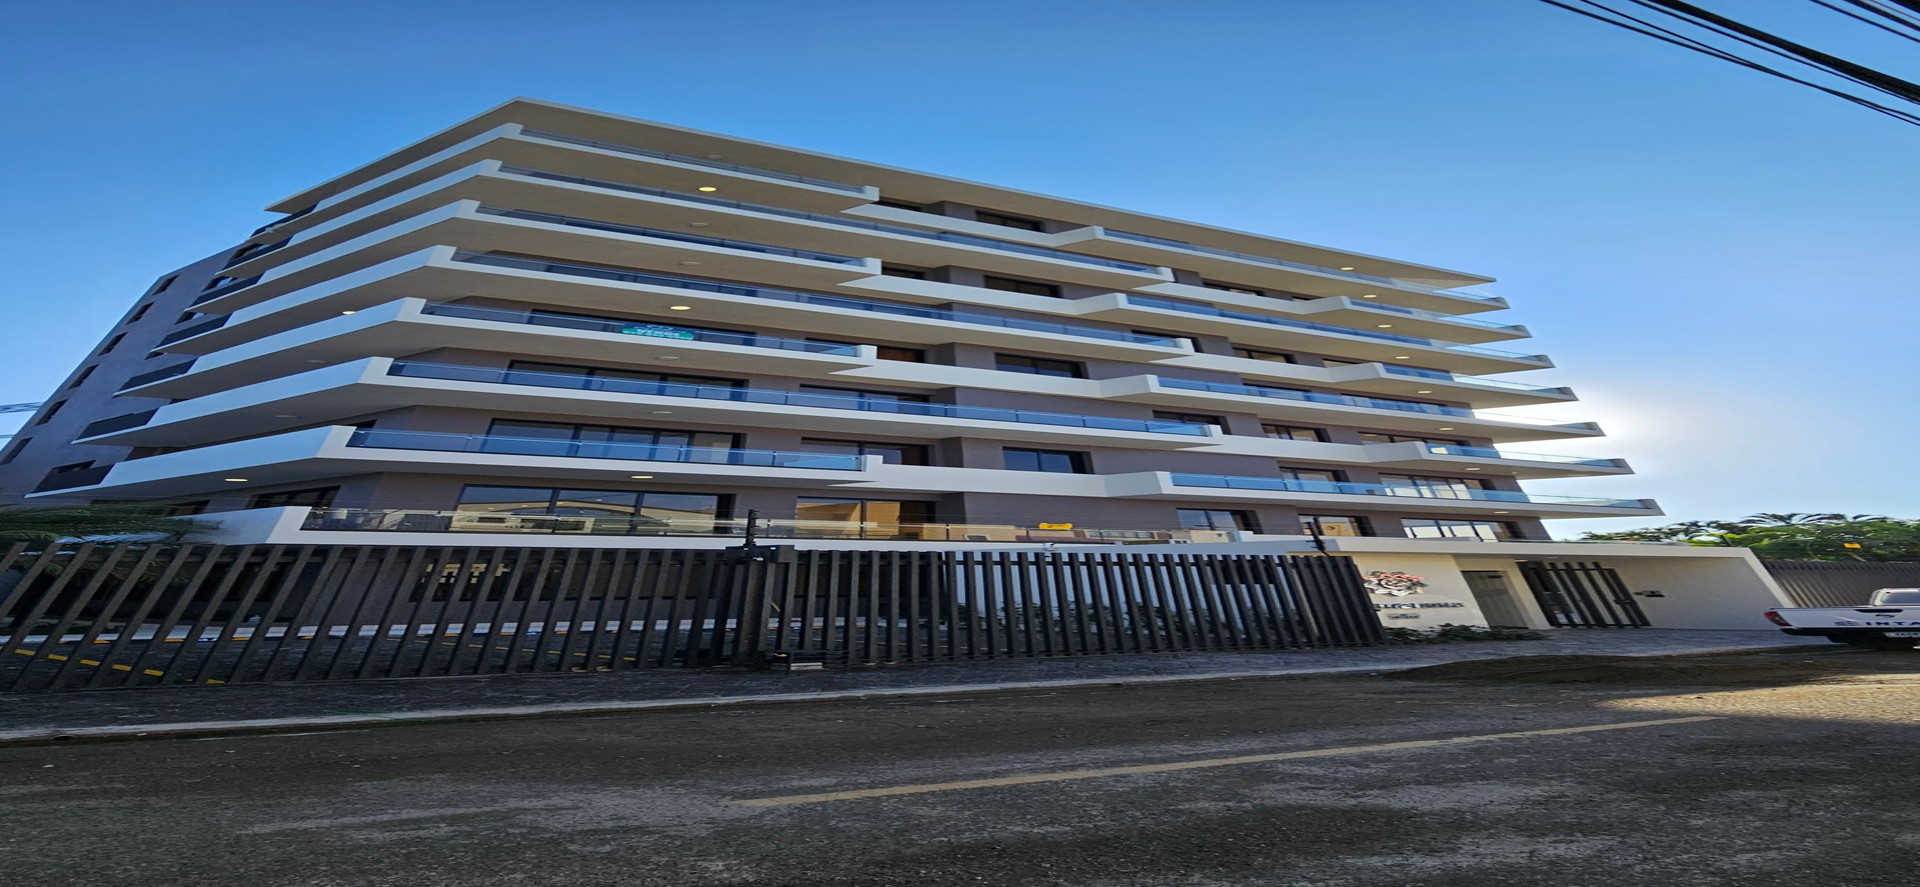 apartamentos - Apartamento nuevo en La Española -5to nivel